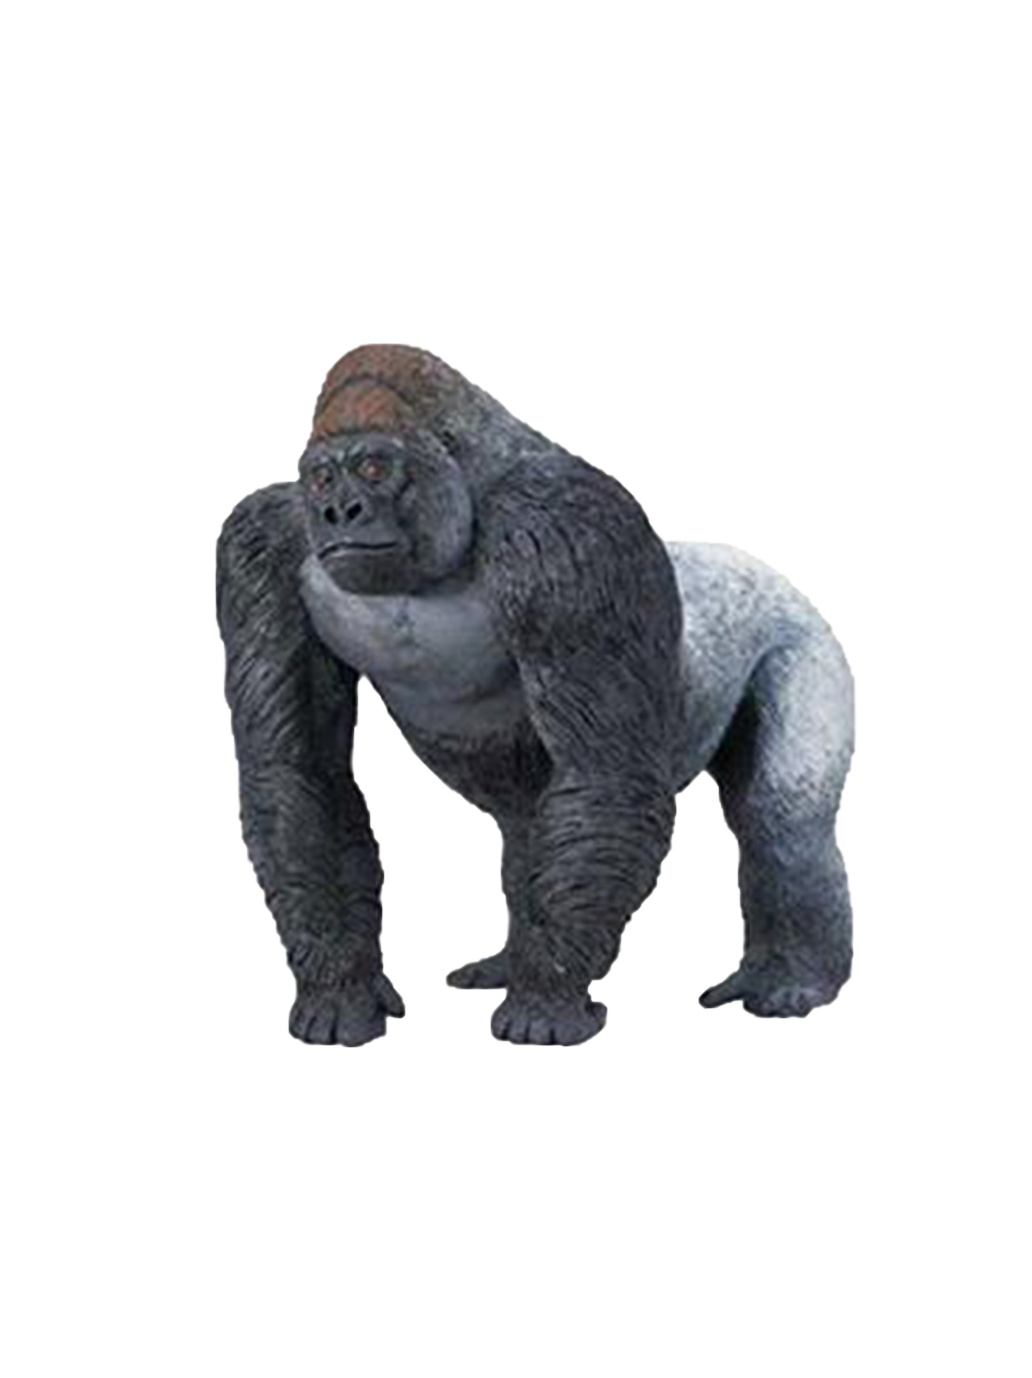 Grande statuetta di gorilla